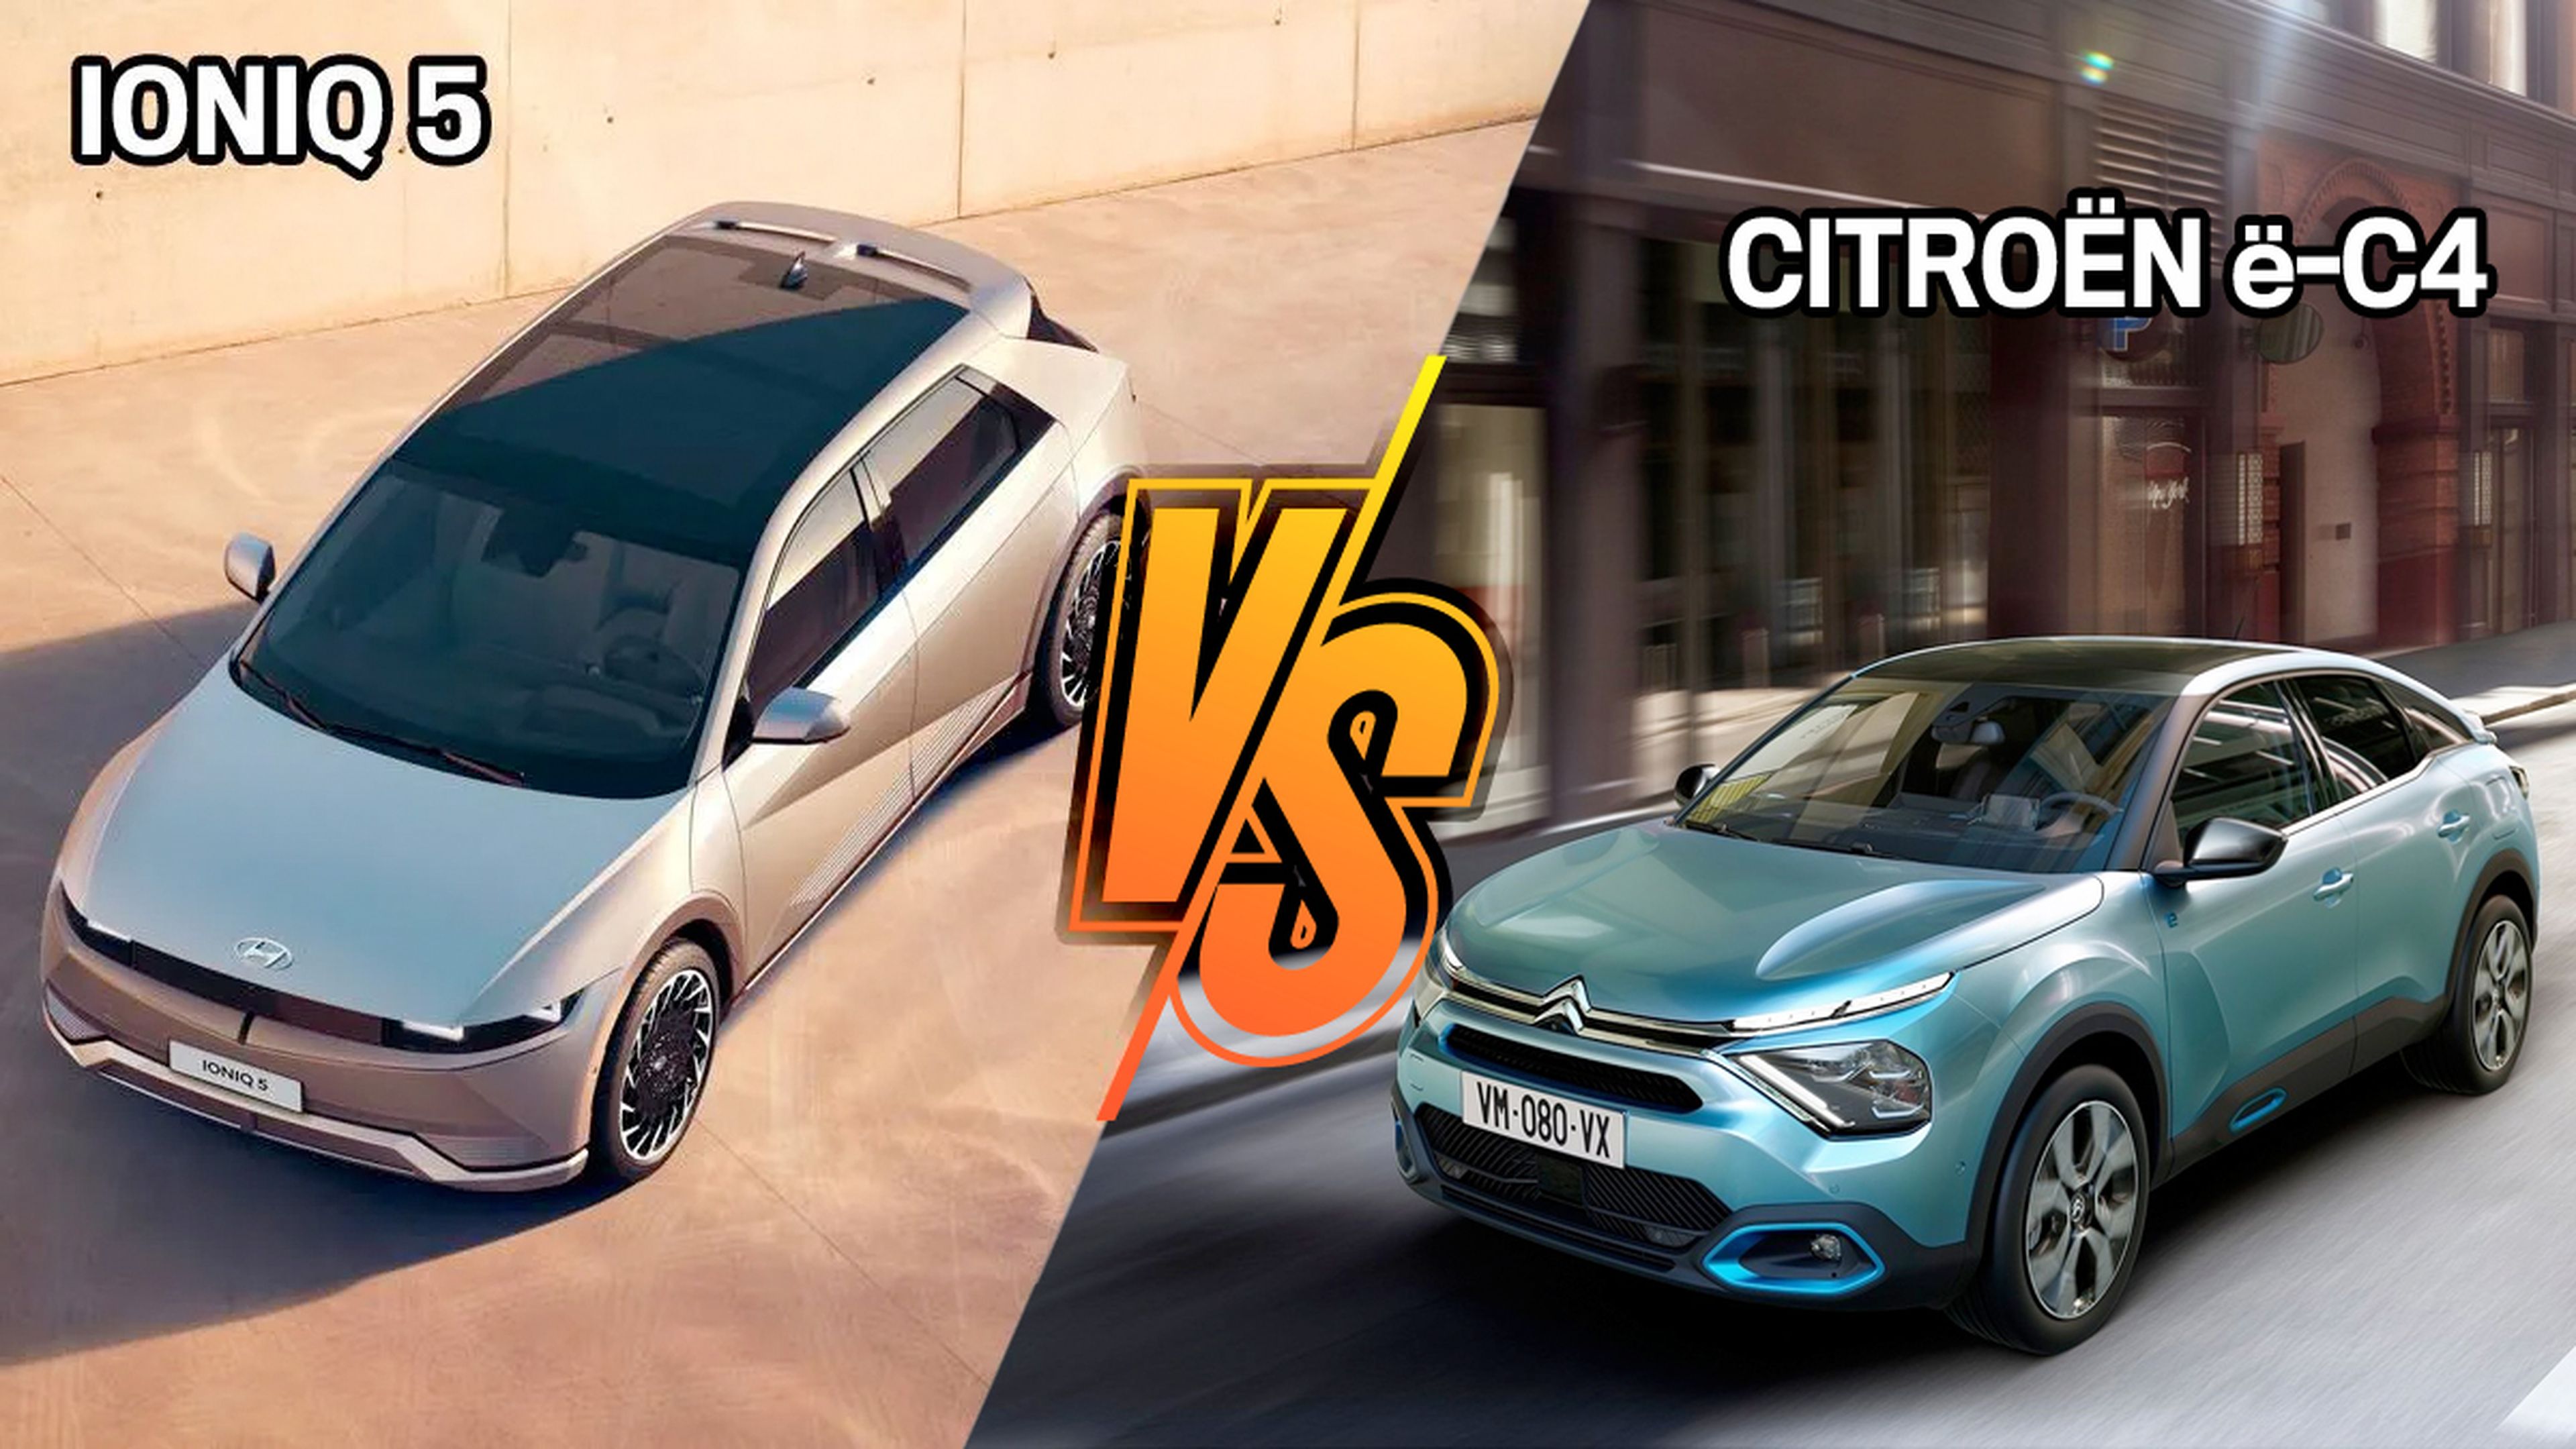 Hyundai Ioniq5 o Citroën ë-C4, ¿cuál es mejor?